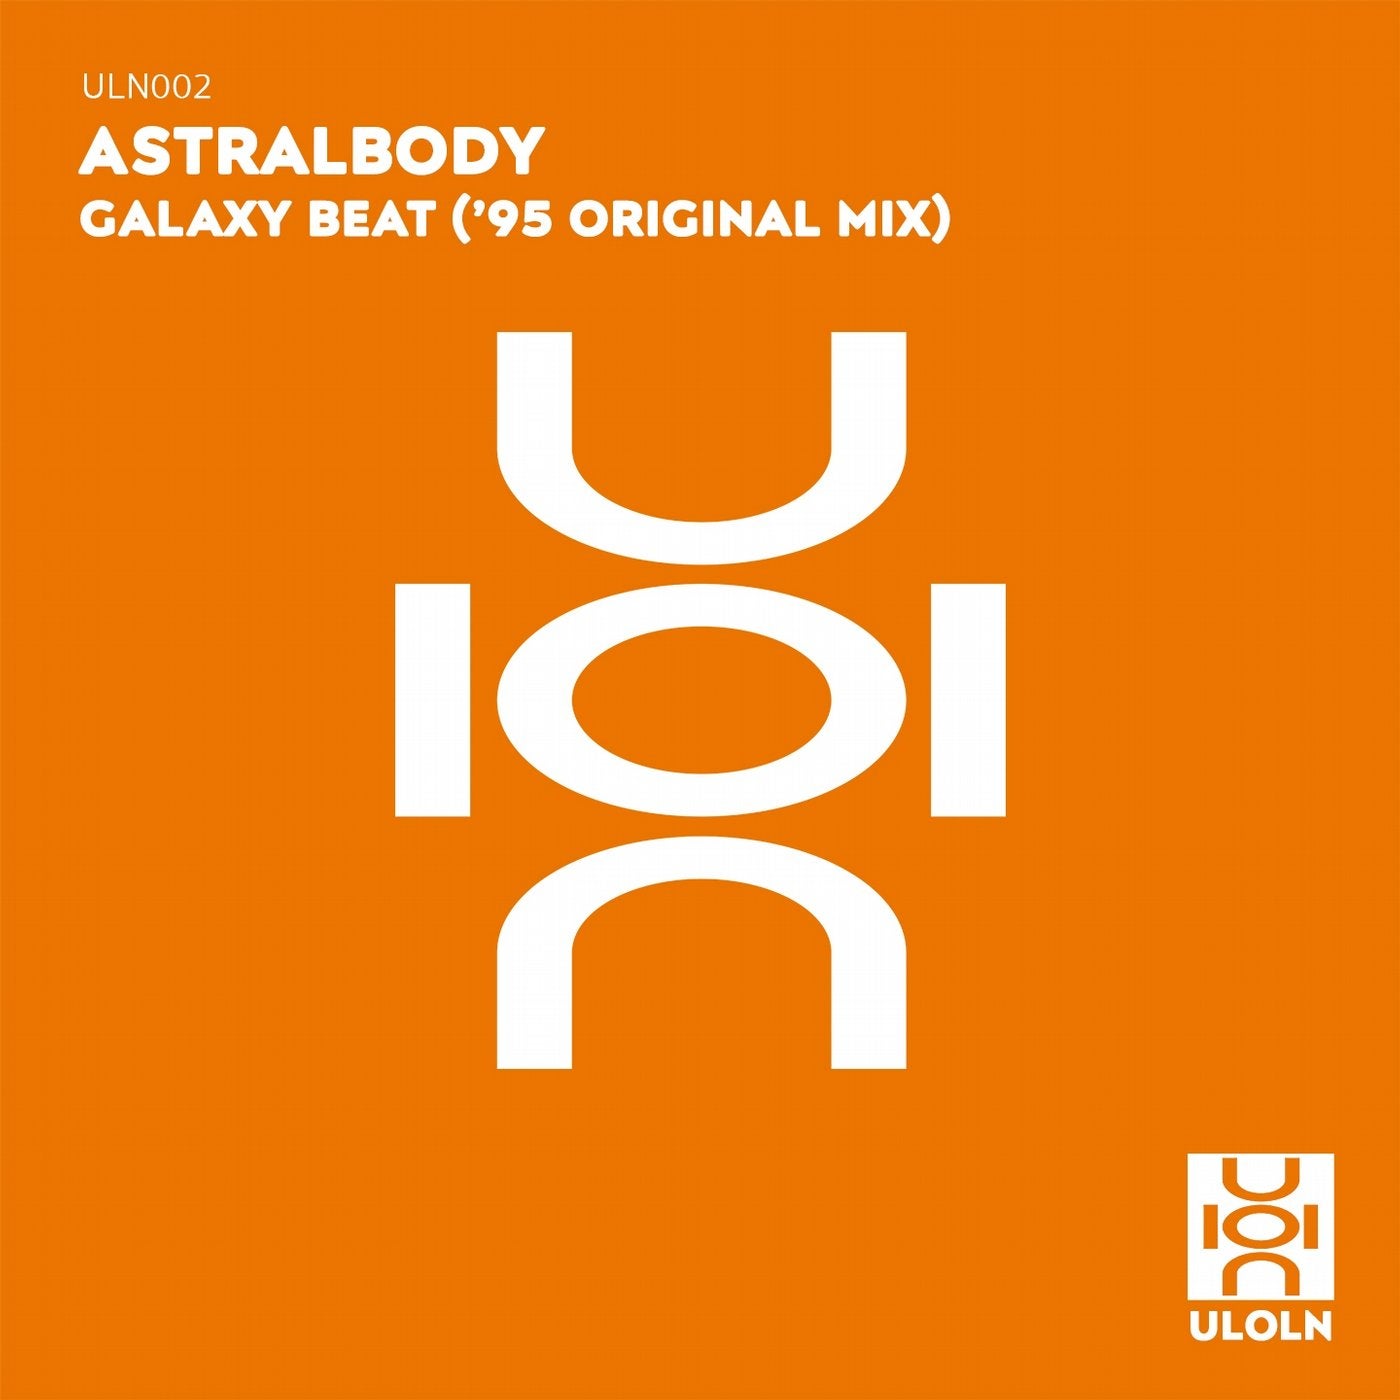 Galaxy Beat ('95 Mix)